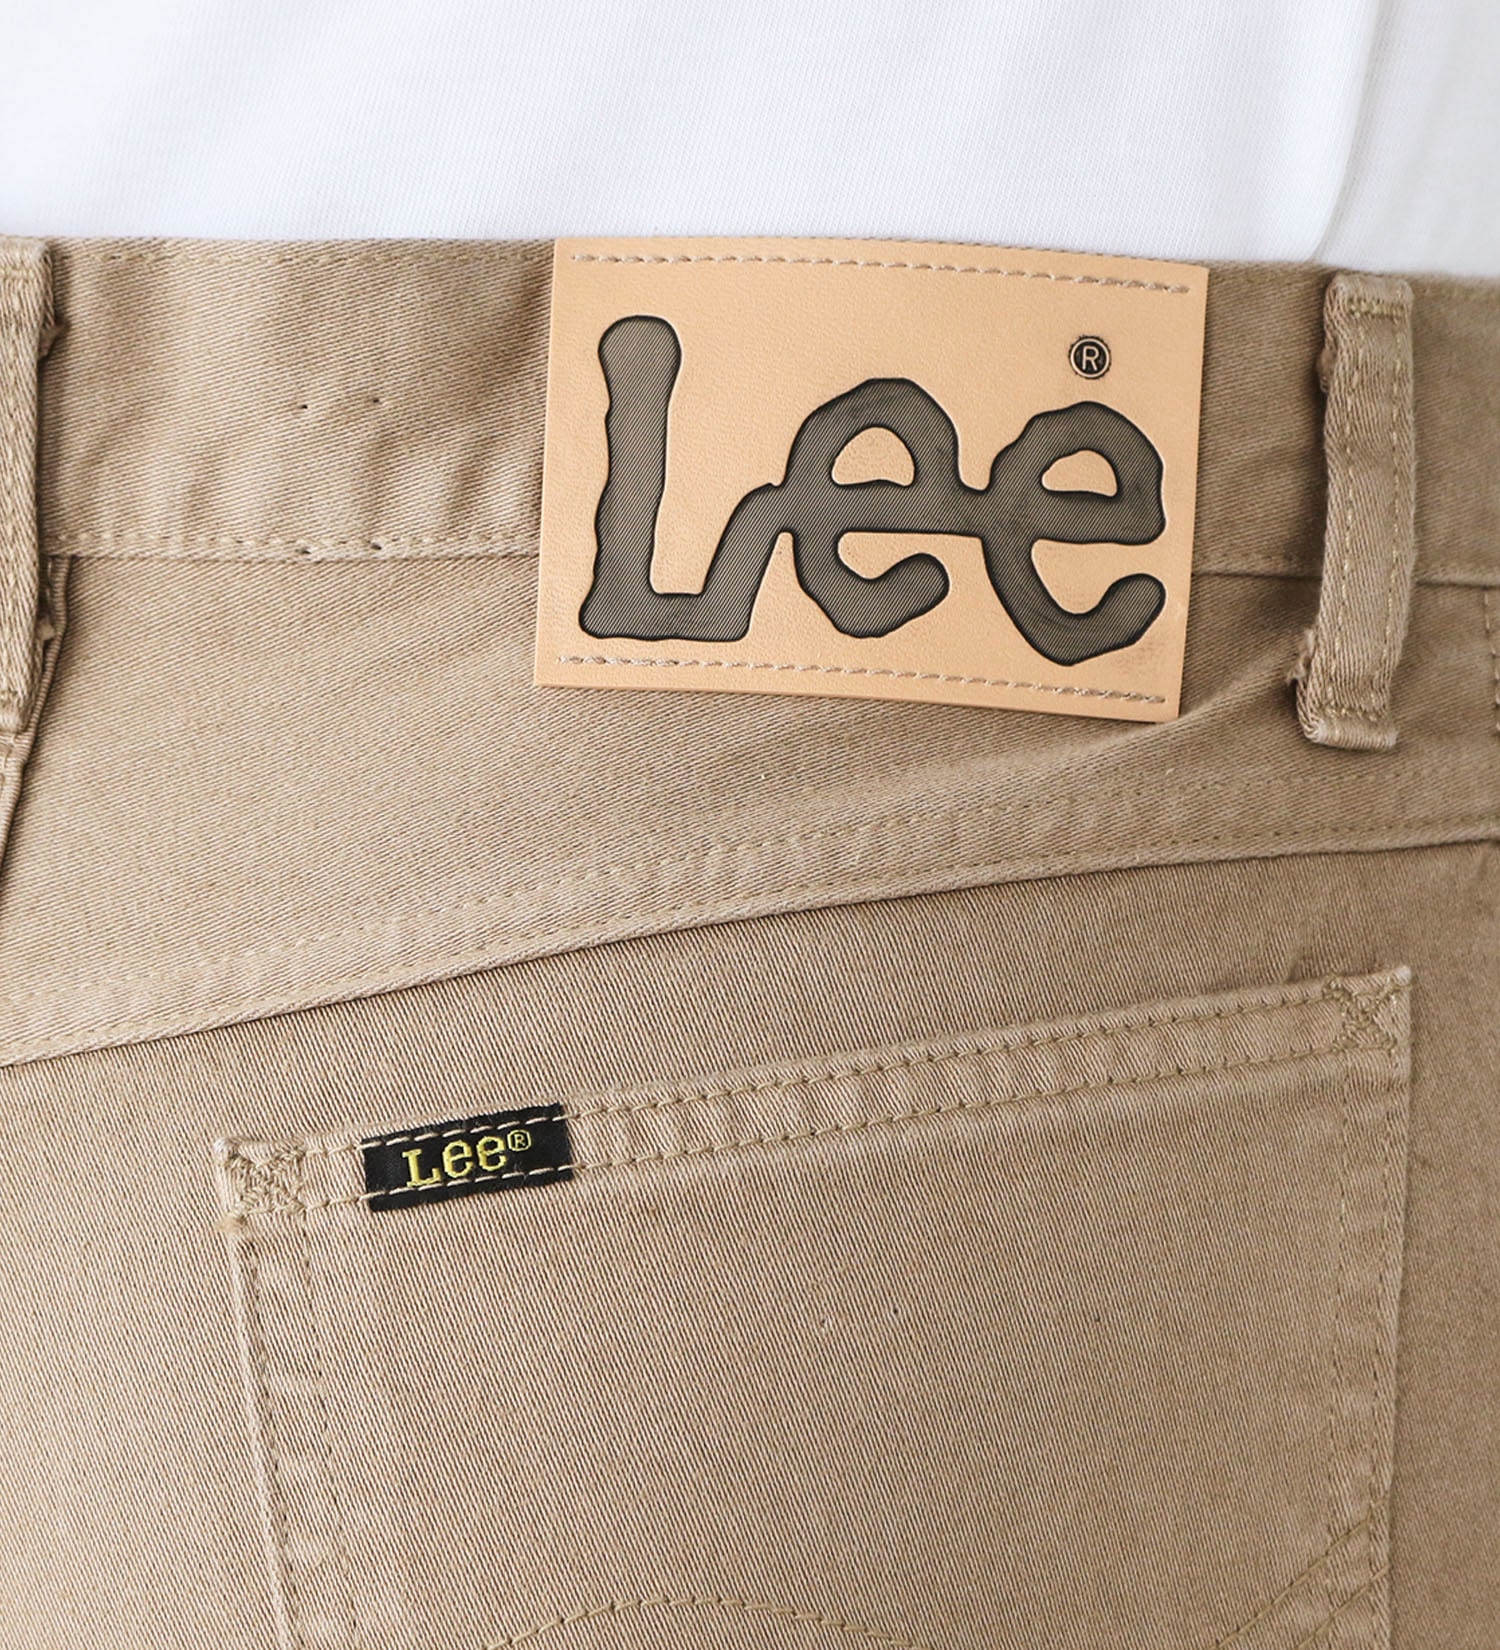 Lee(リー)のAMERICAN STANDARD 201ウエスターナー サテン ストレートパンツ|パンツ/デニムパンツ/メンズ|ライトブラウン